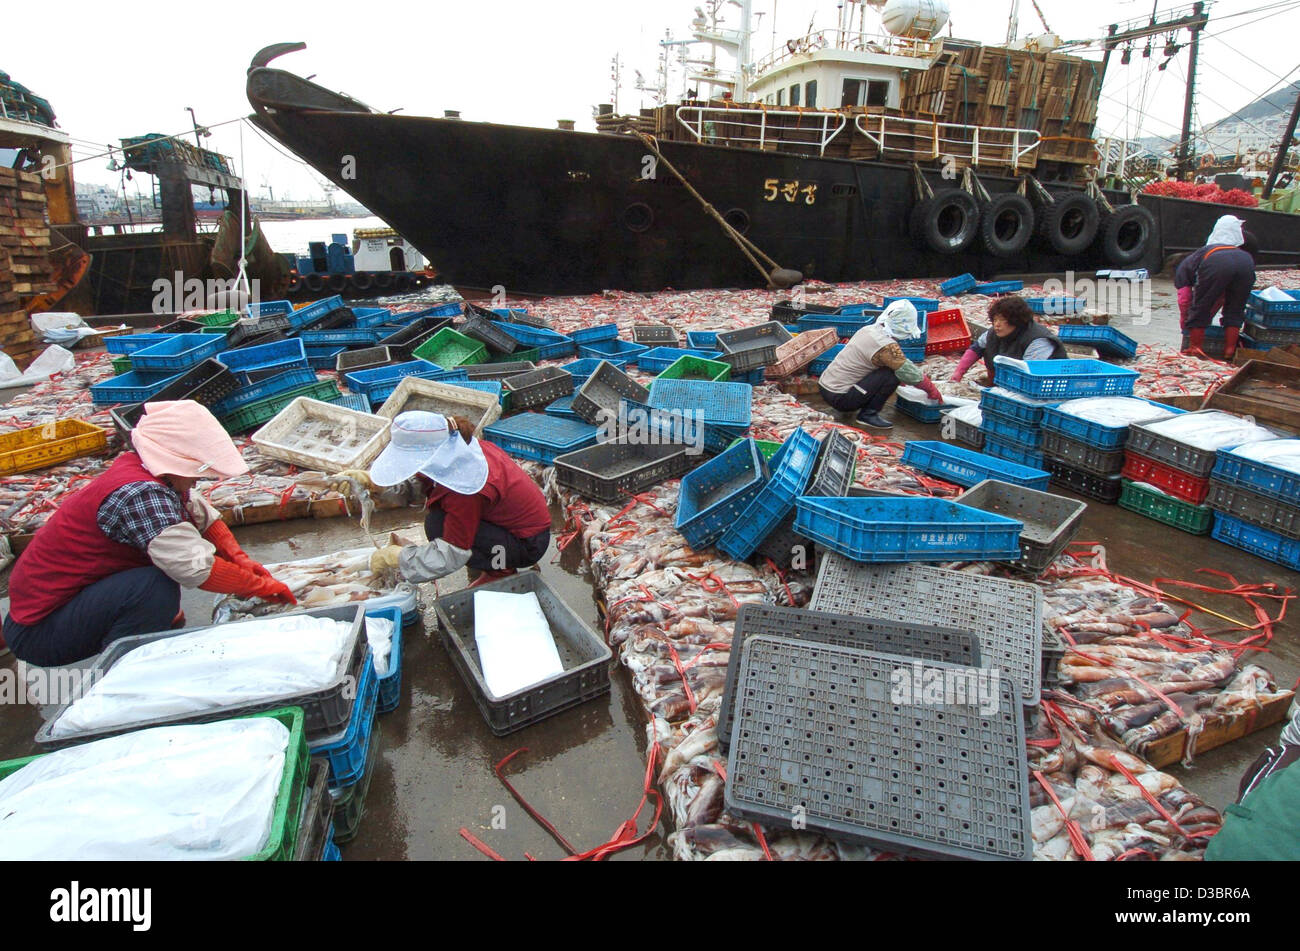 (Dpa) - Lavoratori ordina i carichi di prodotti freschi frish che è stato consegnato da barche da pesca presso il mercato del pesce di Busan, Corea del Sud, il 19 dicembre 2004. Di pesce, cozze e calamari sono i principali dieta in Corea del Sud. Foto Stock